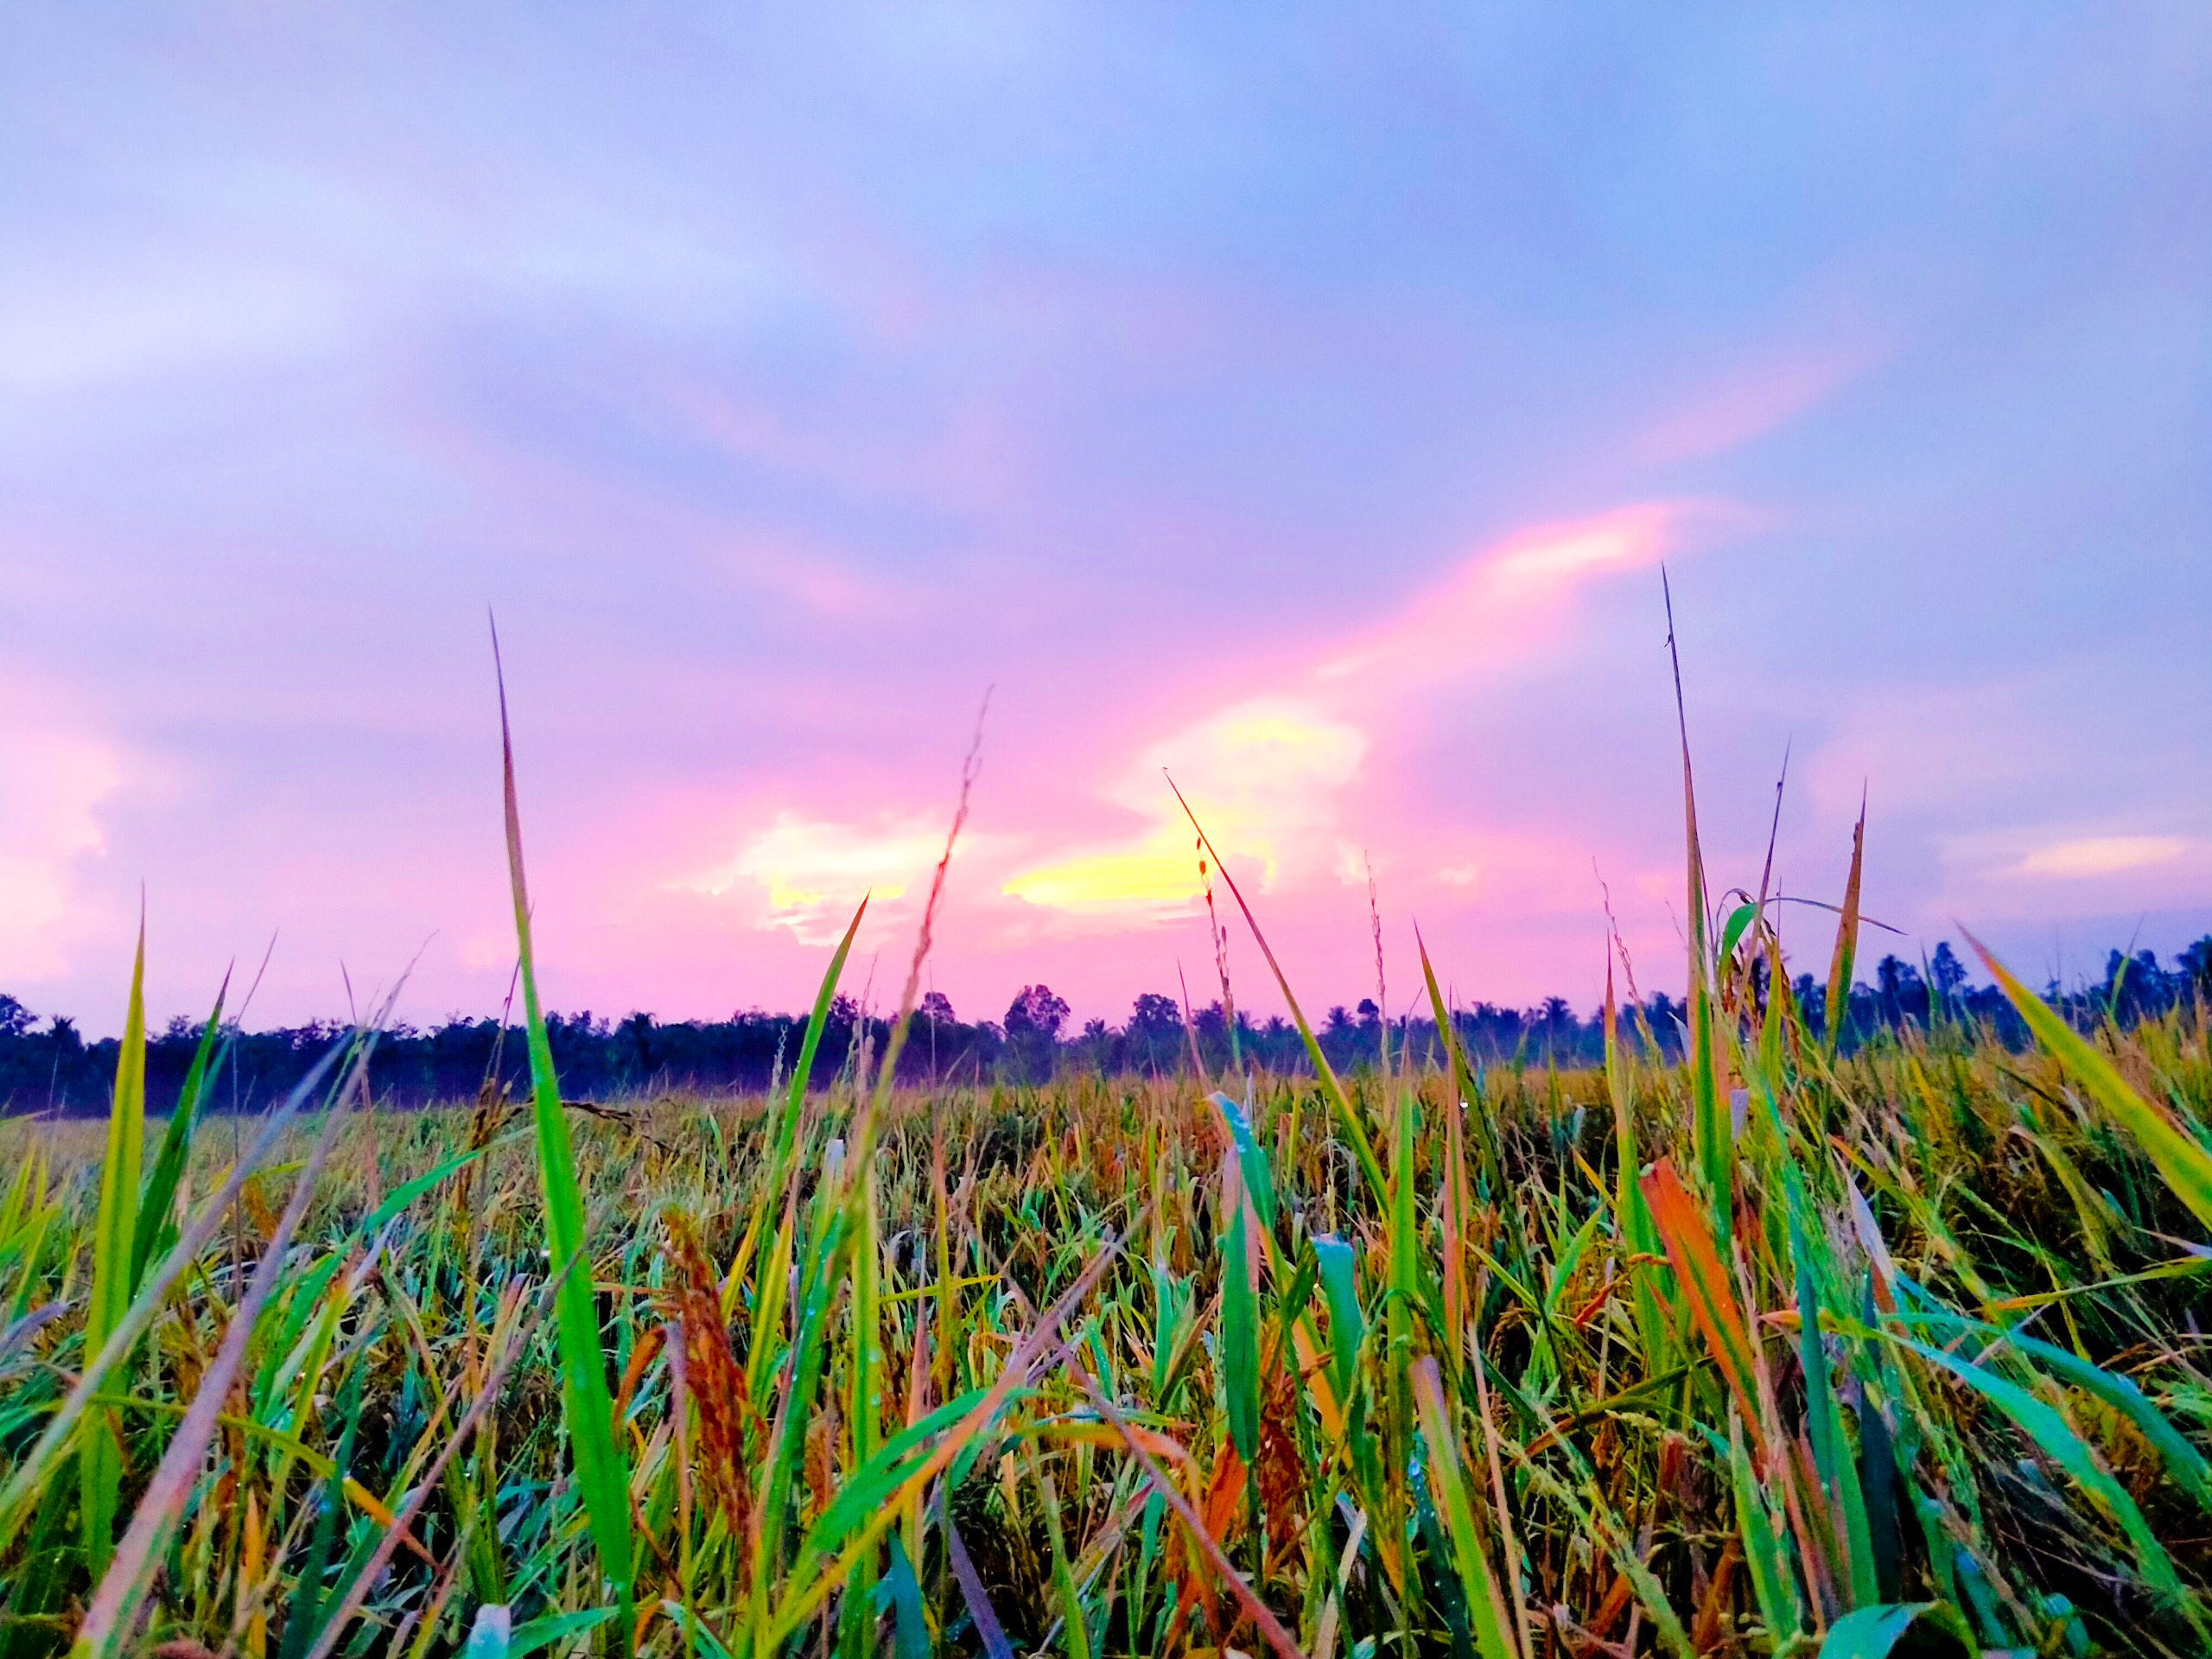 Hãy chiêm ngưỡng cảnh tuyệt đẹp của cánh đồng lúa bạt ngàn với màu xanh mướt mát mắt. Tận hưởng trọn vẹn không khí trong lành và thư thái như người nông dân thật sự.